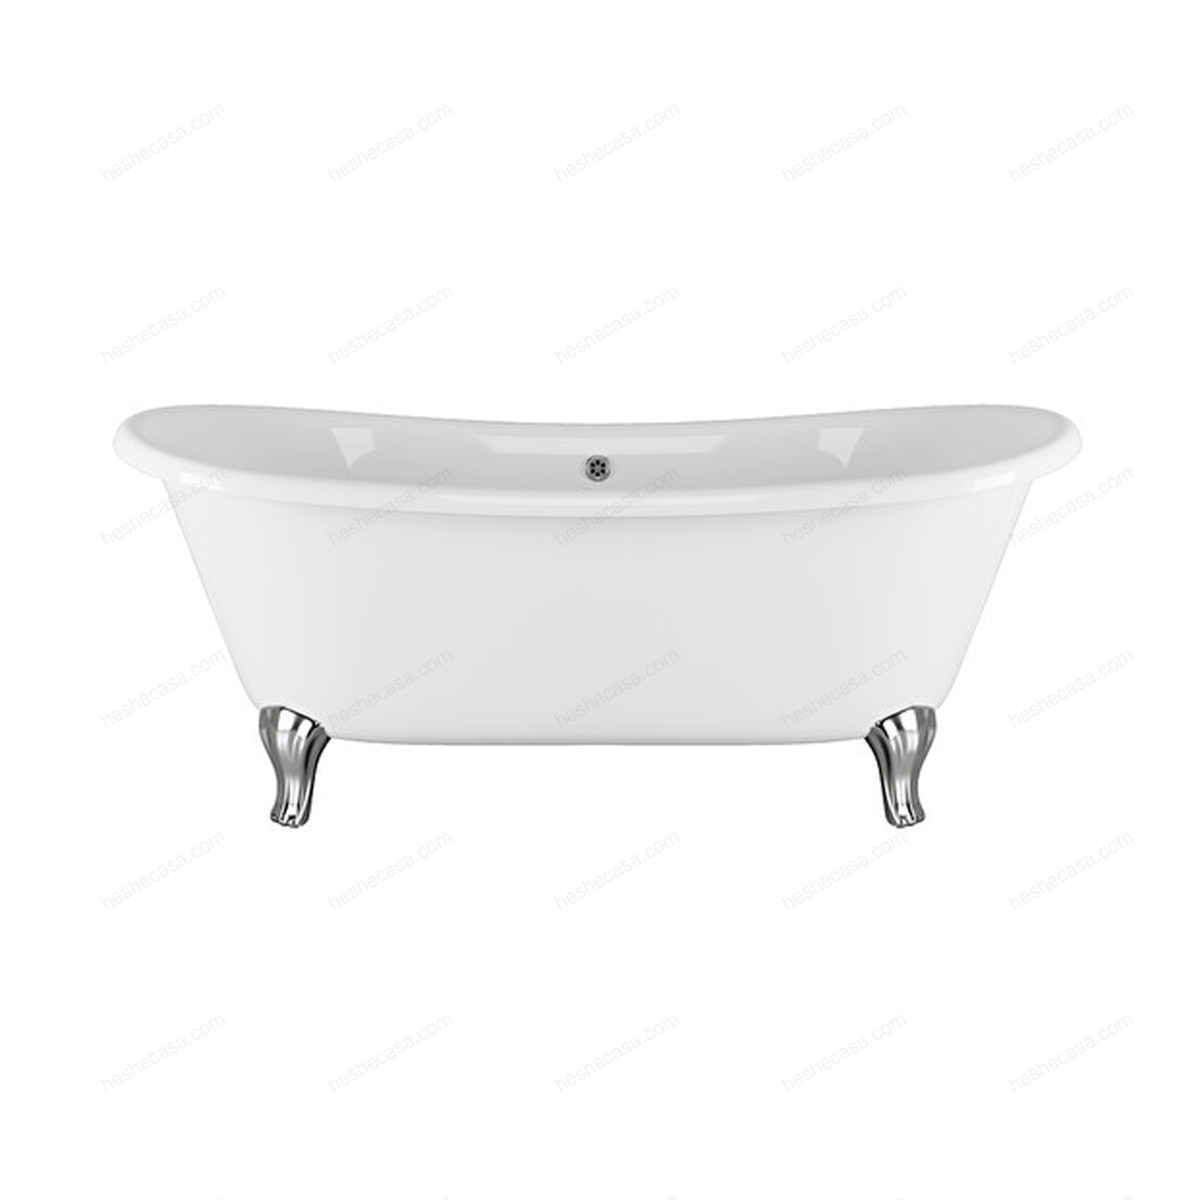 Admiral 172 Bathtub浴缸